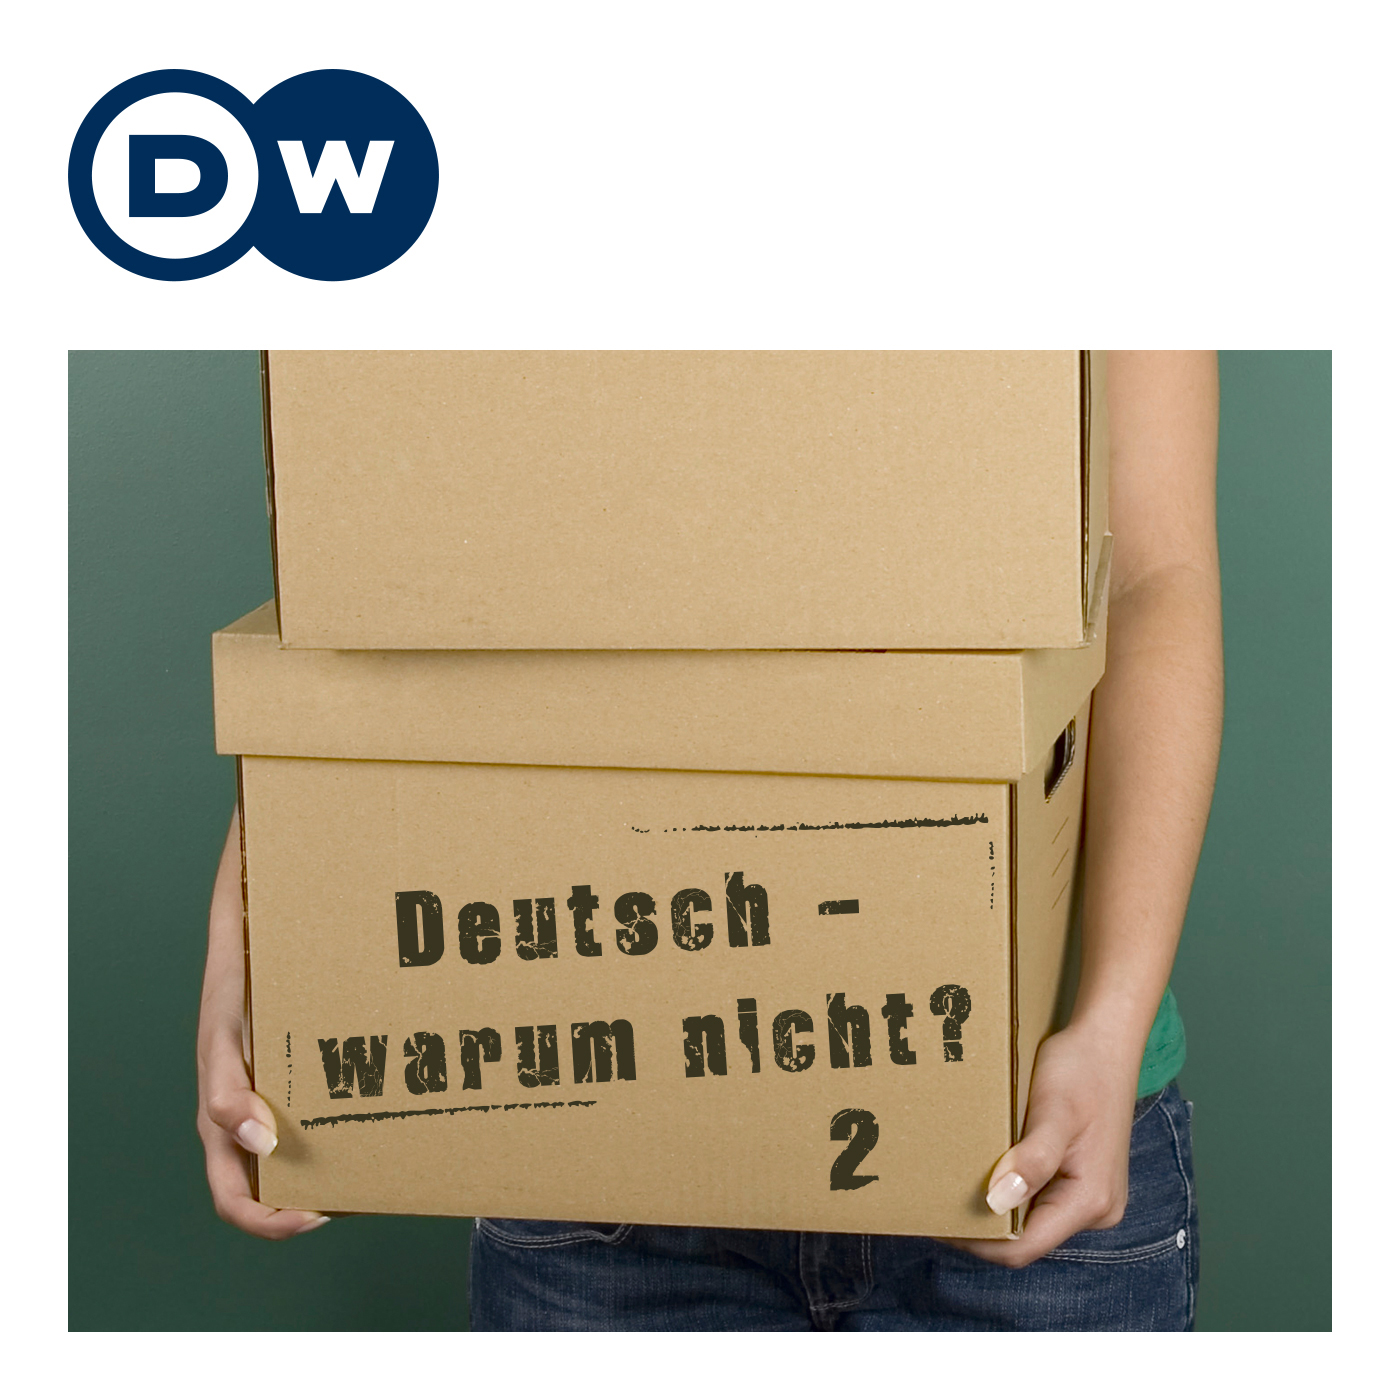 Deutsch - warum nicht? Series 2 | Learning German | Deutsche Welle